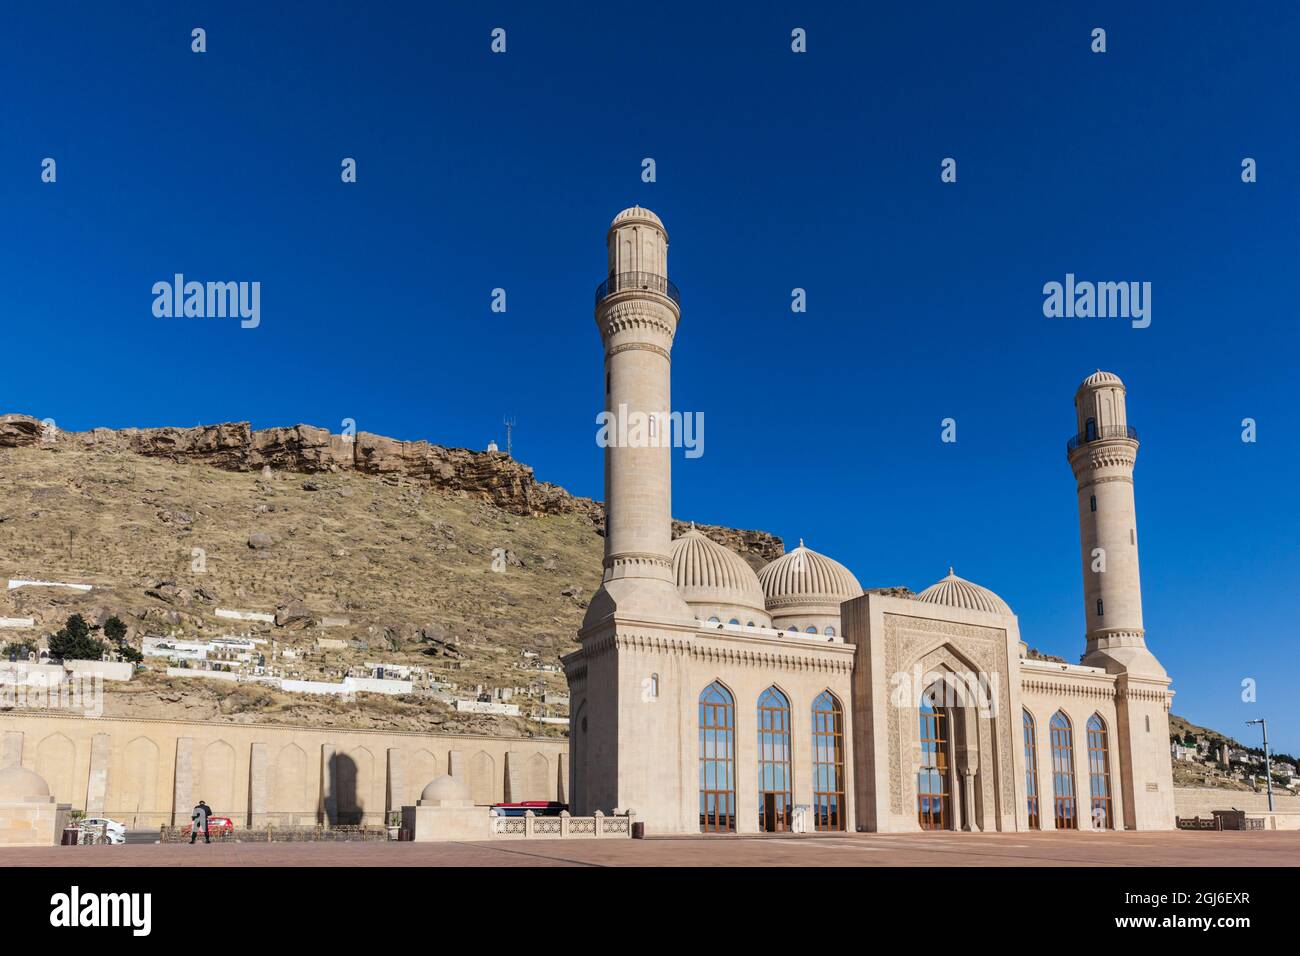 Azerbaijan, Baku. Bibi-Heybat Mosque exterior. Stock Photo